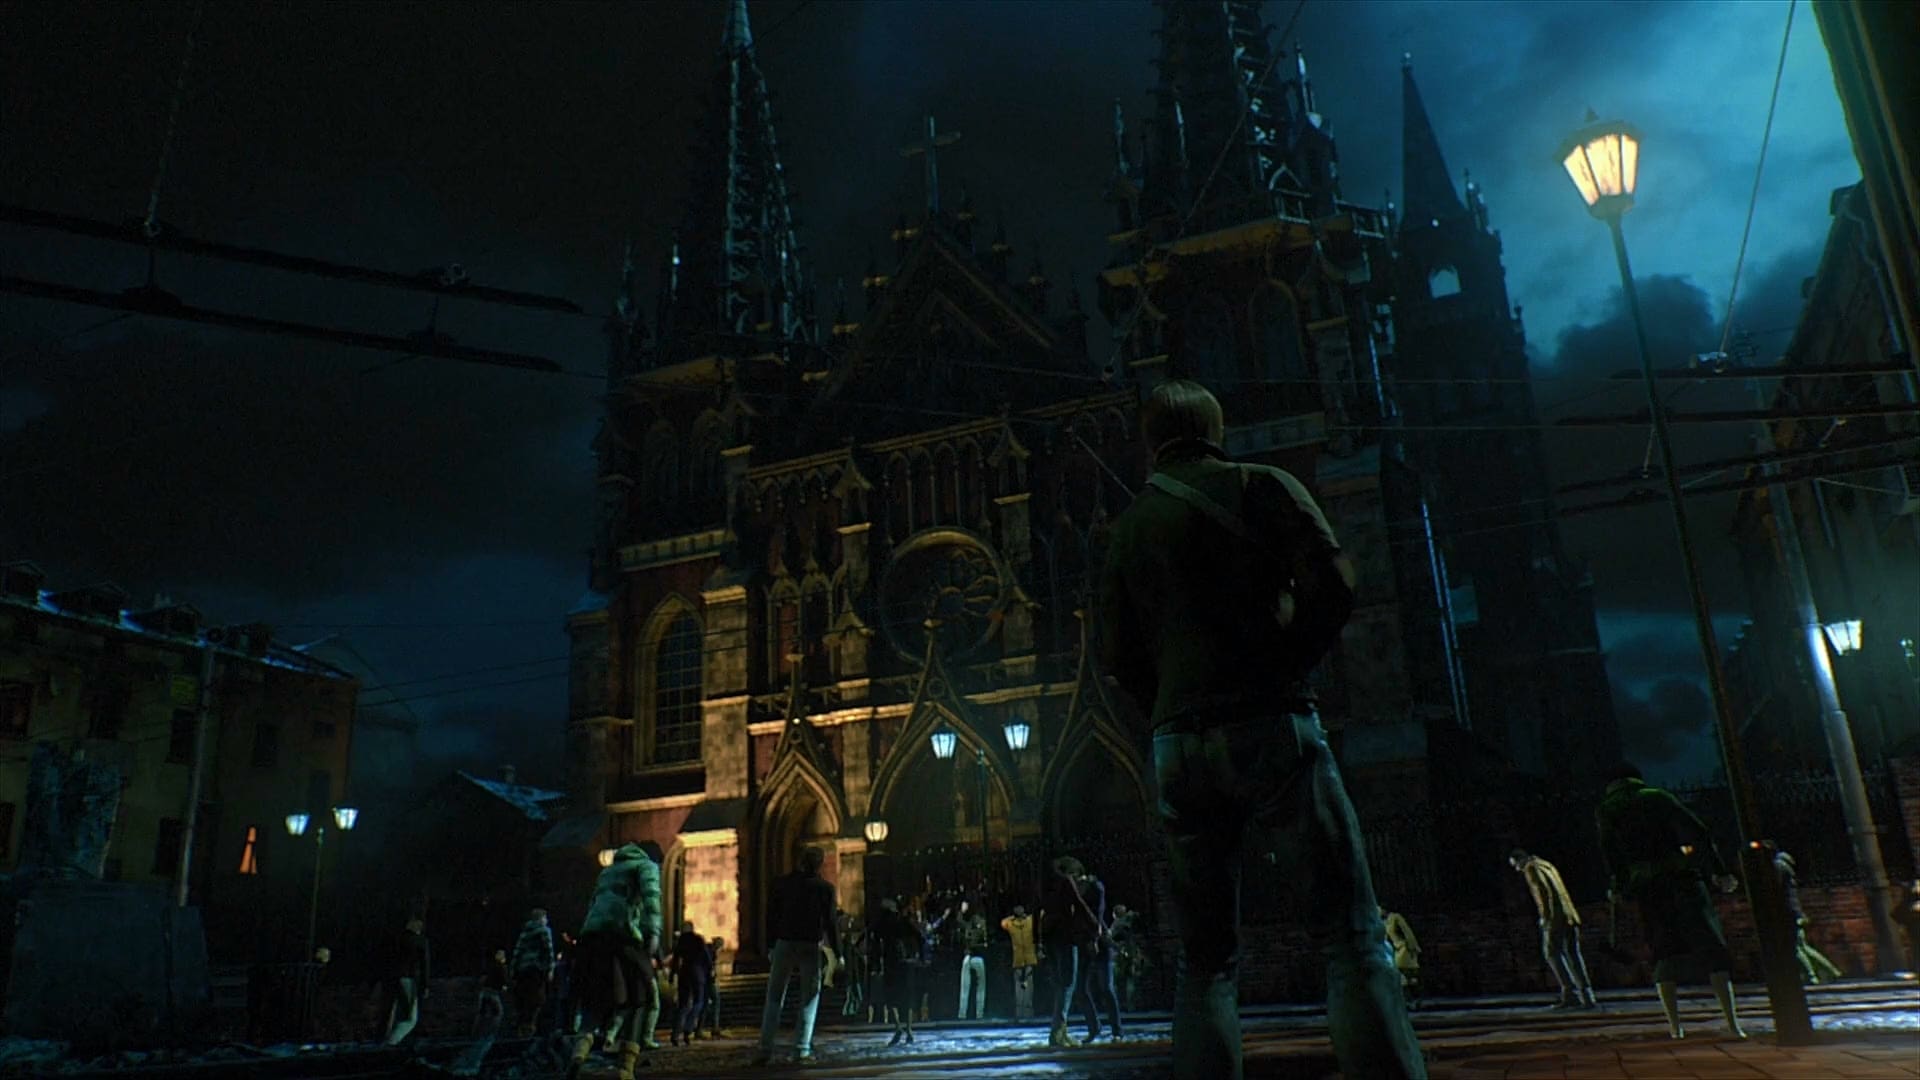 Resident Evil - Damnation (2012)